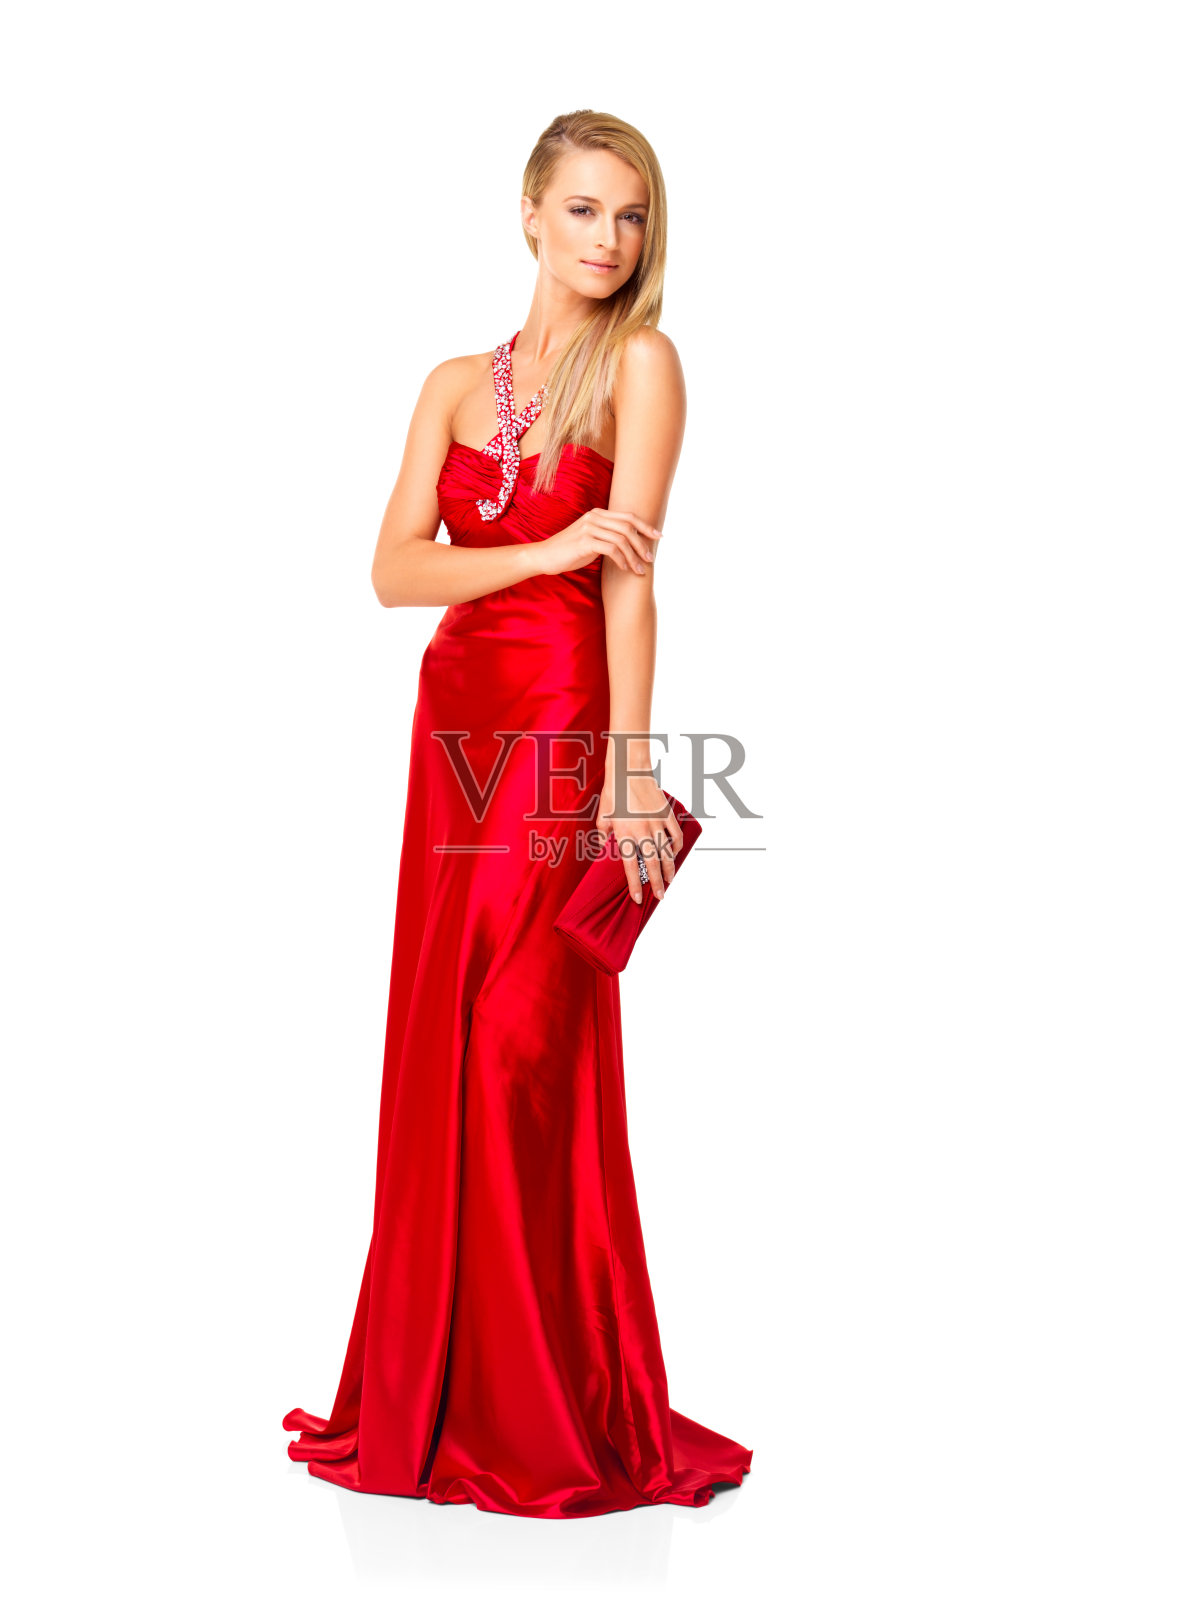 穿着红裙子的漂亮女人照片摄影图片